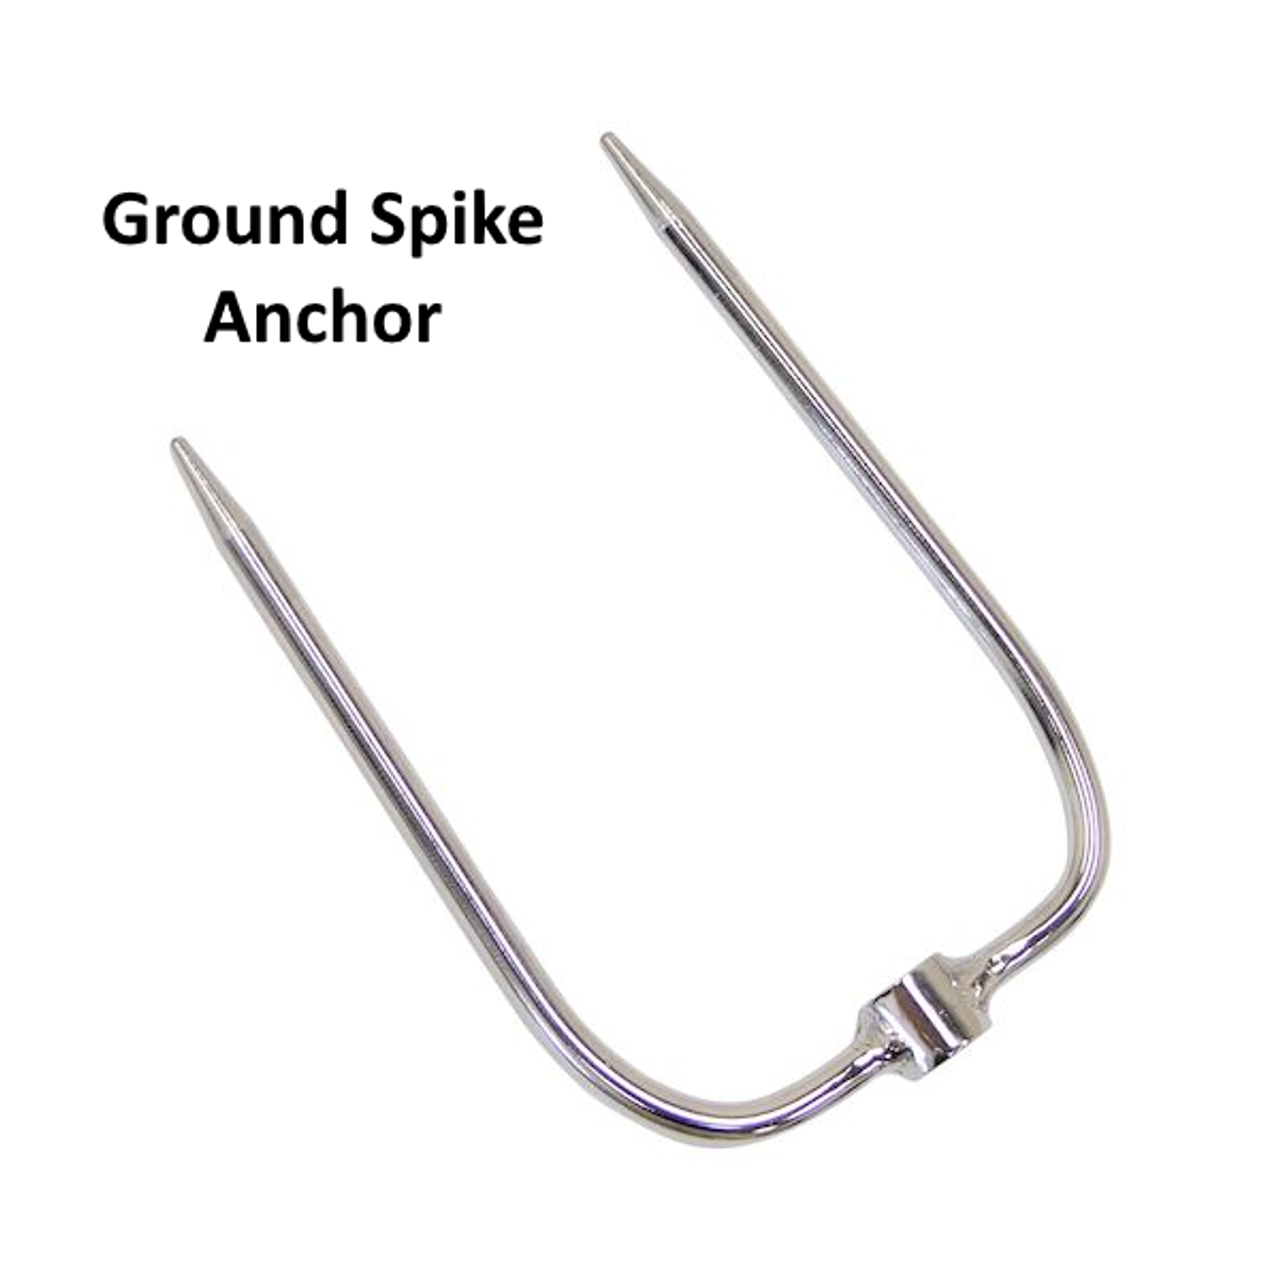 Ground Spike Anchor